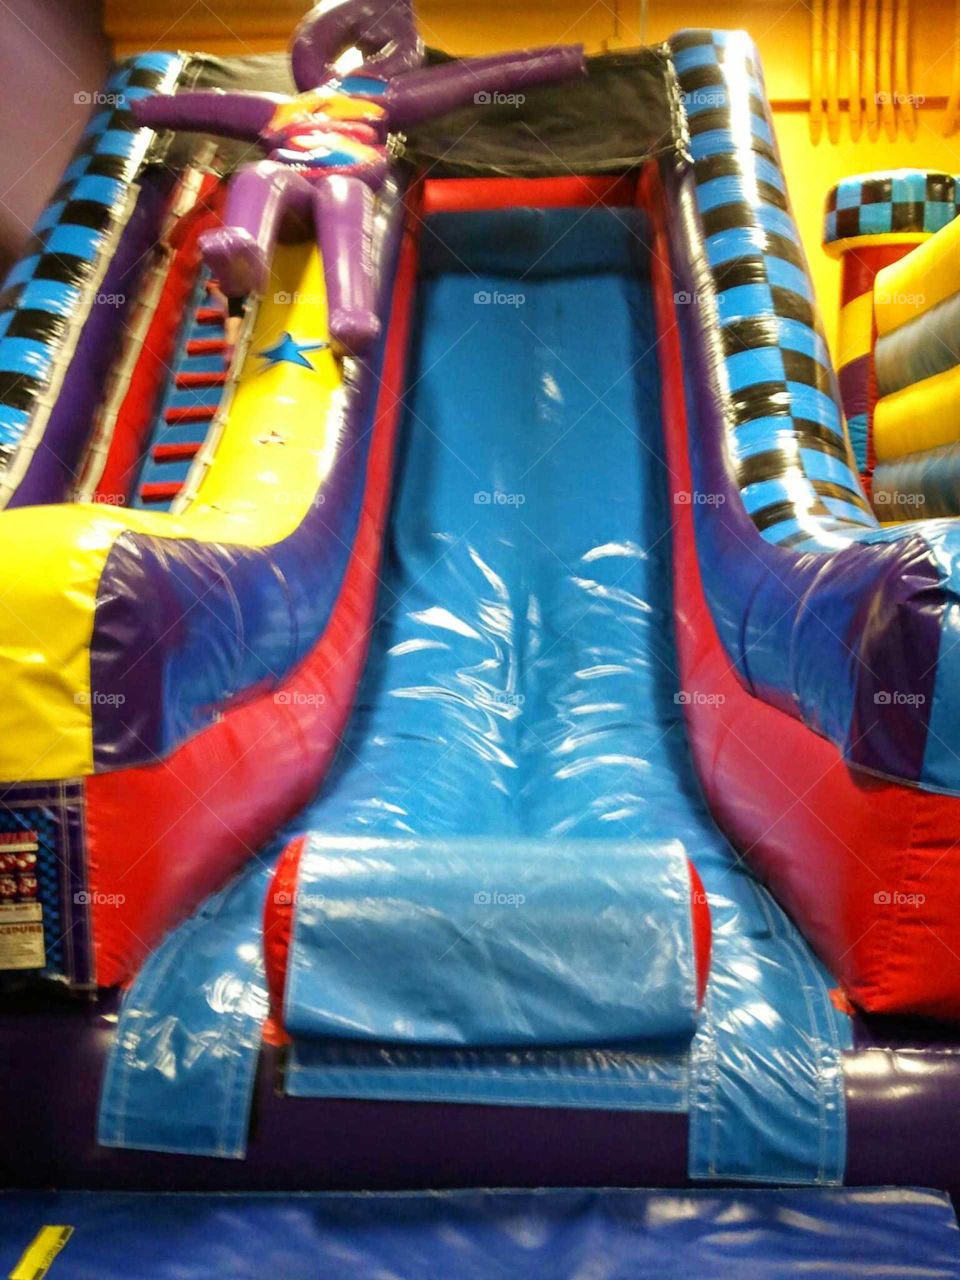 bounce slide